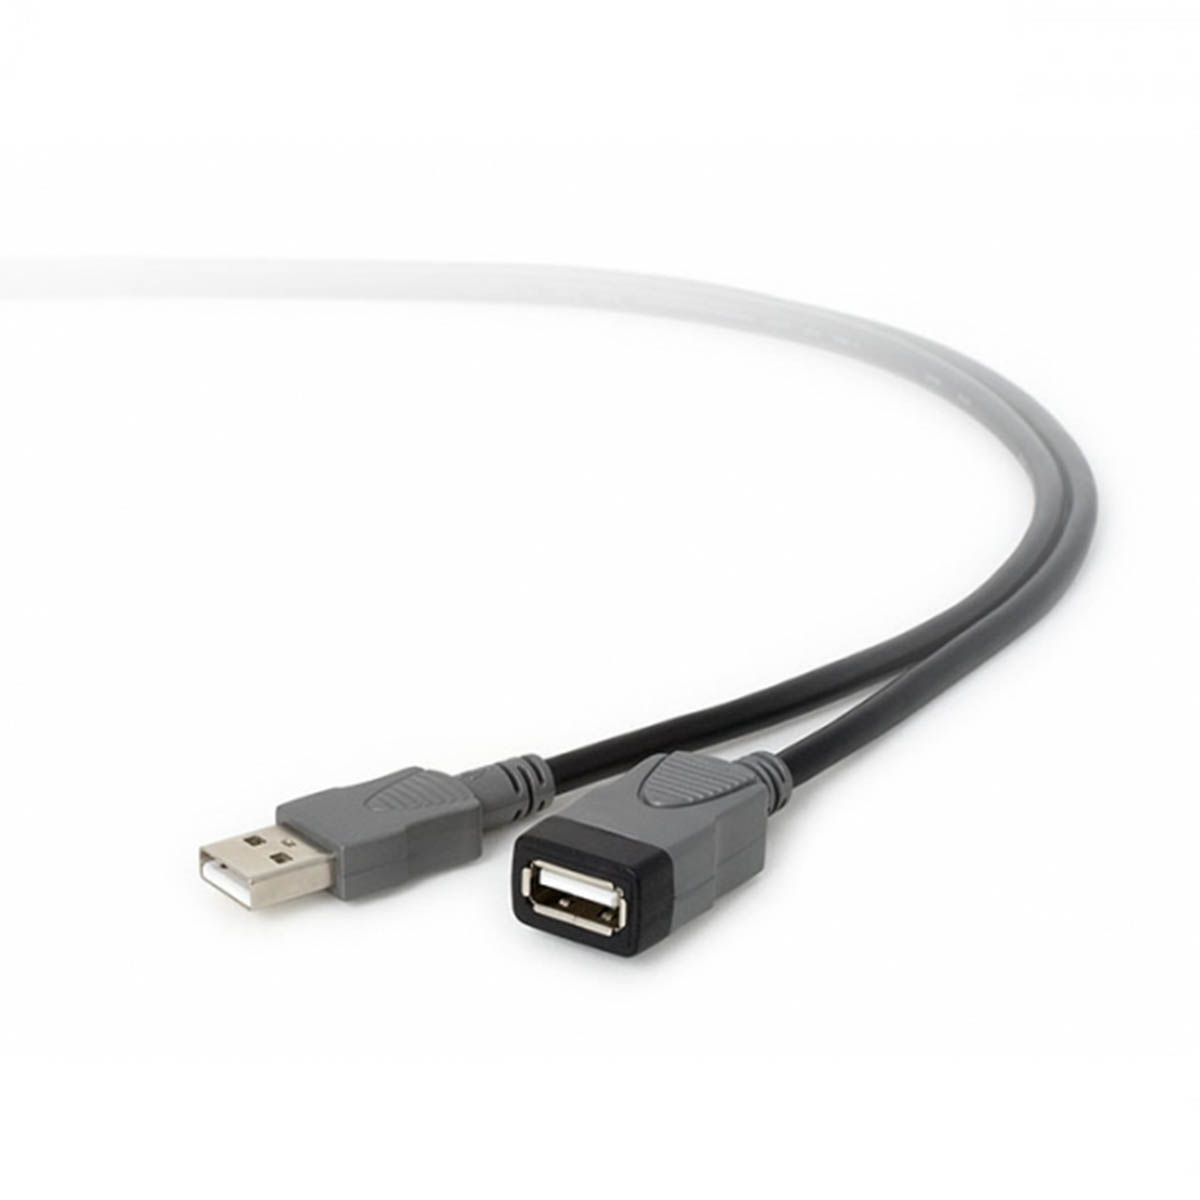 Удлинитель USB 2.0 AM-AF DL24, длина 3.0 метра, цвет черный